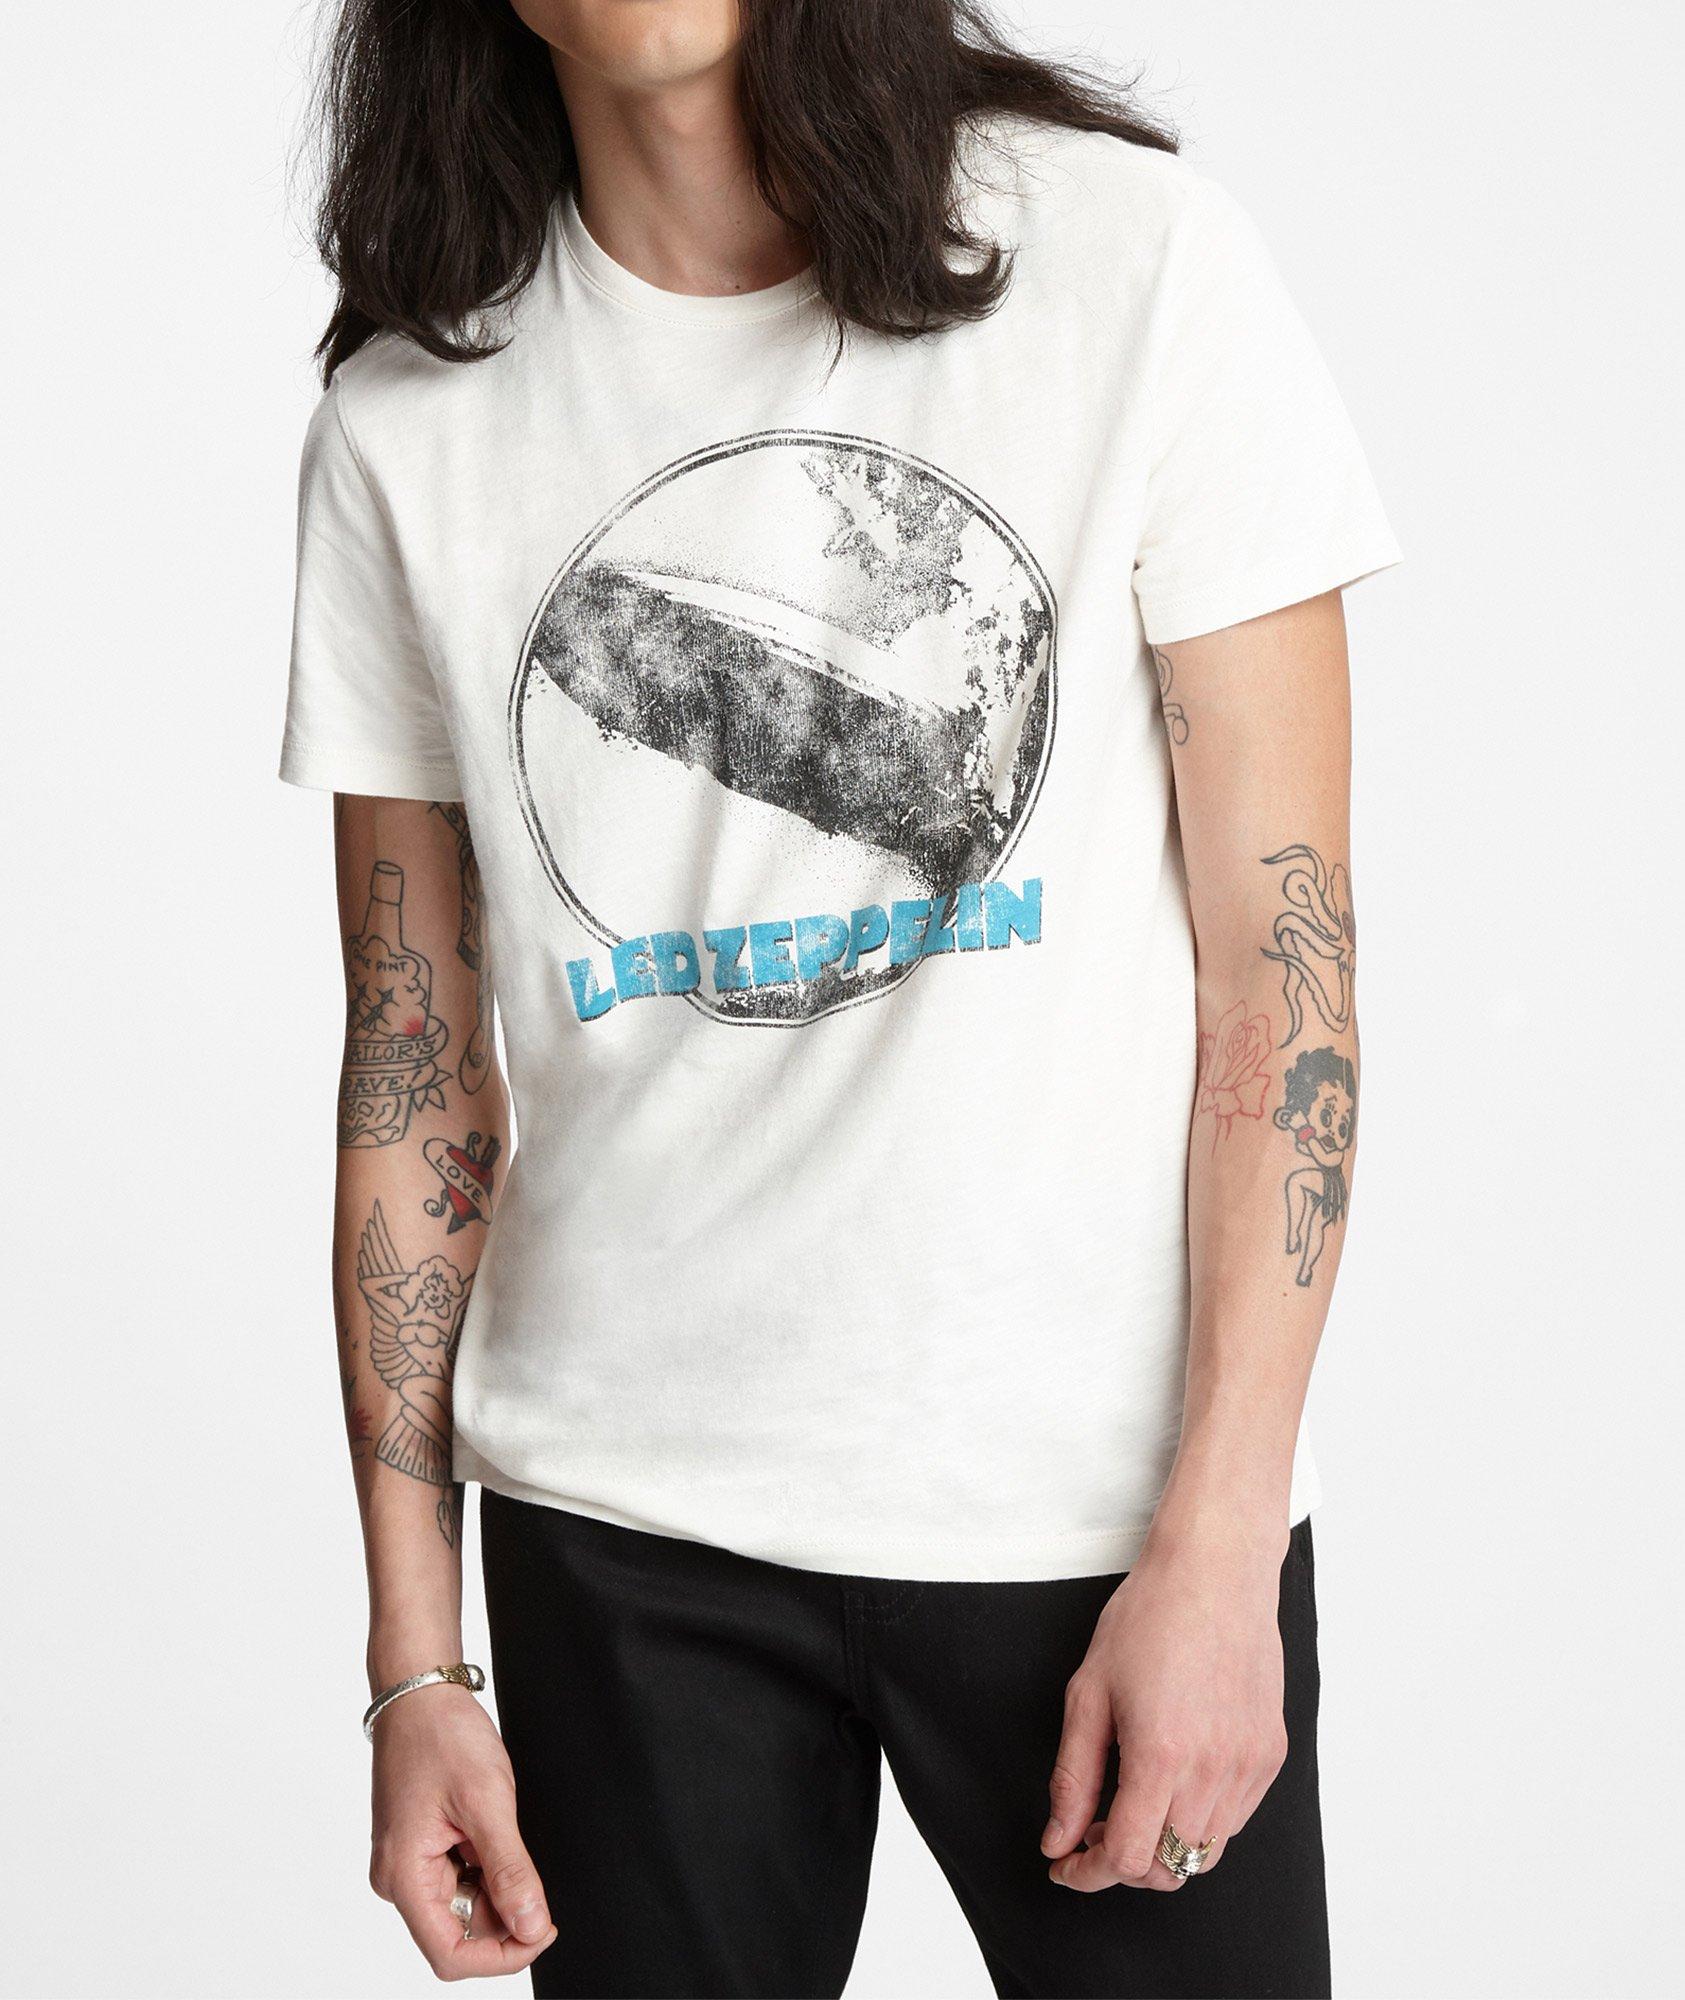 T-shirt de Led Zeppelin image 3